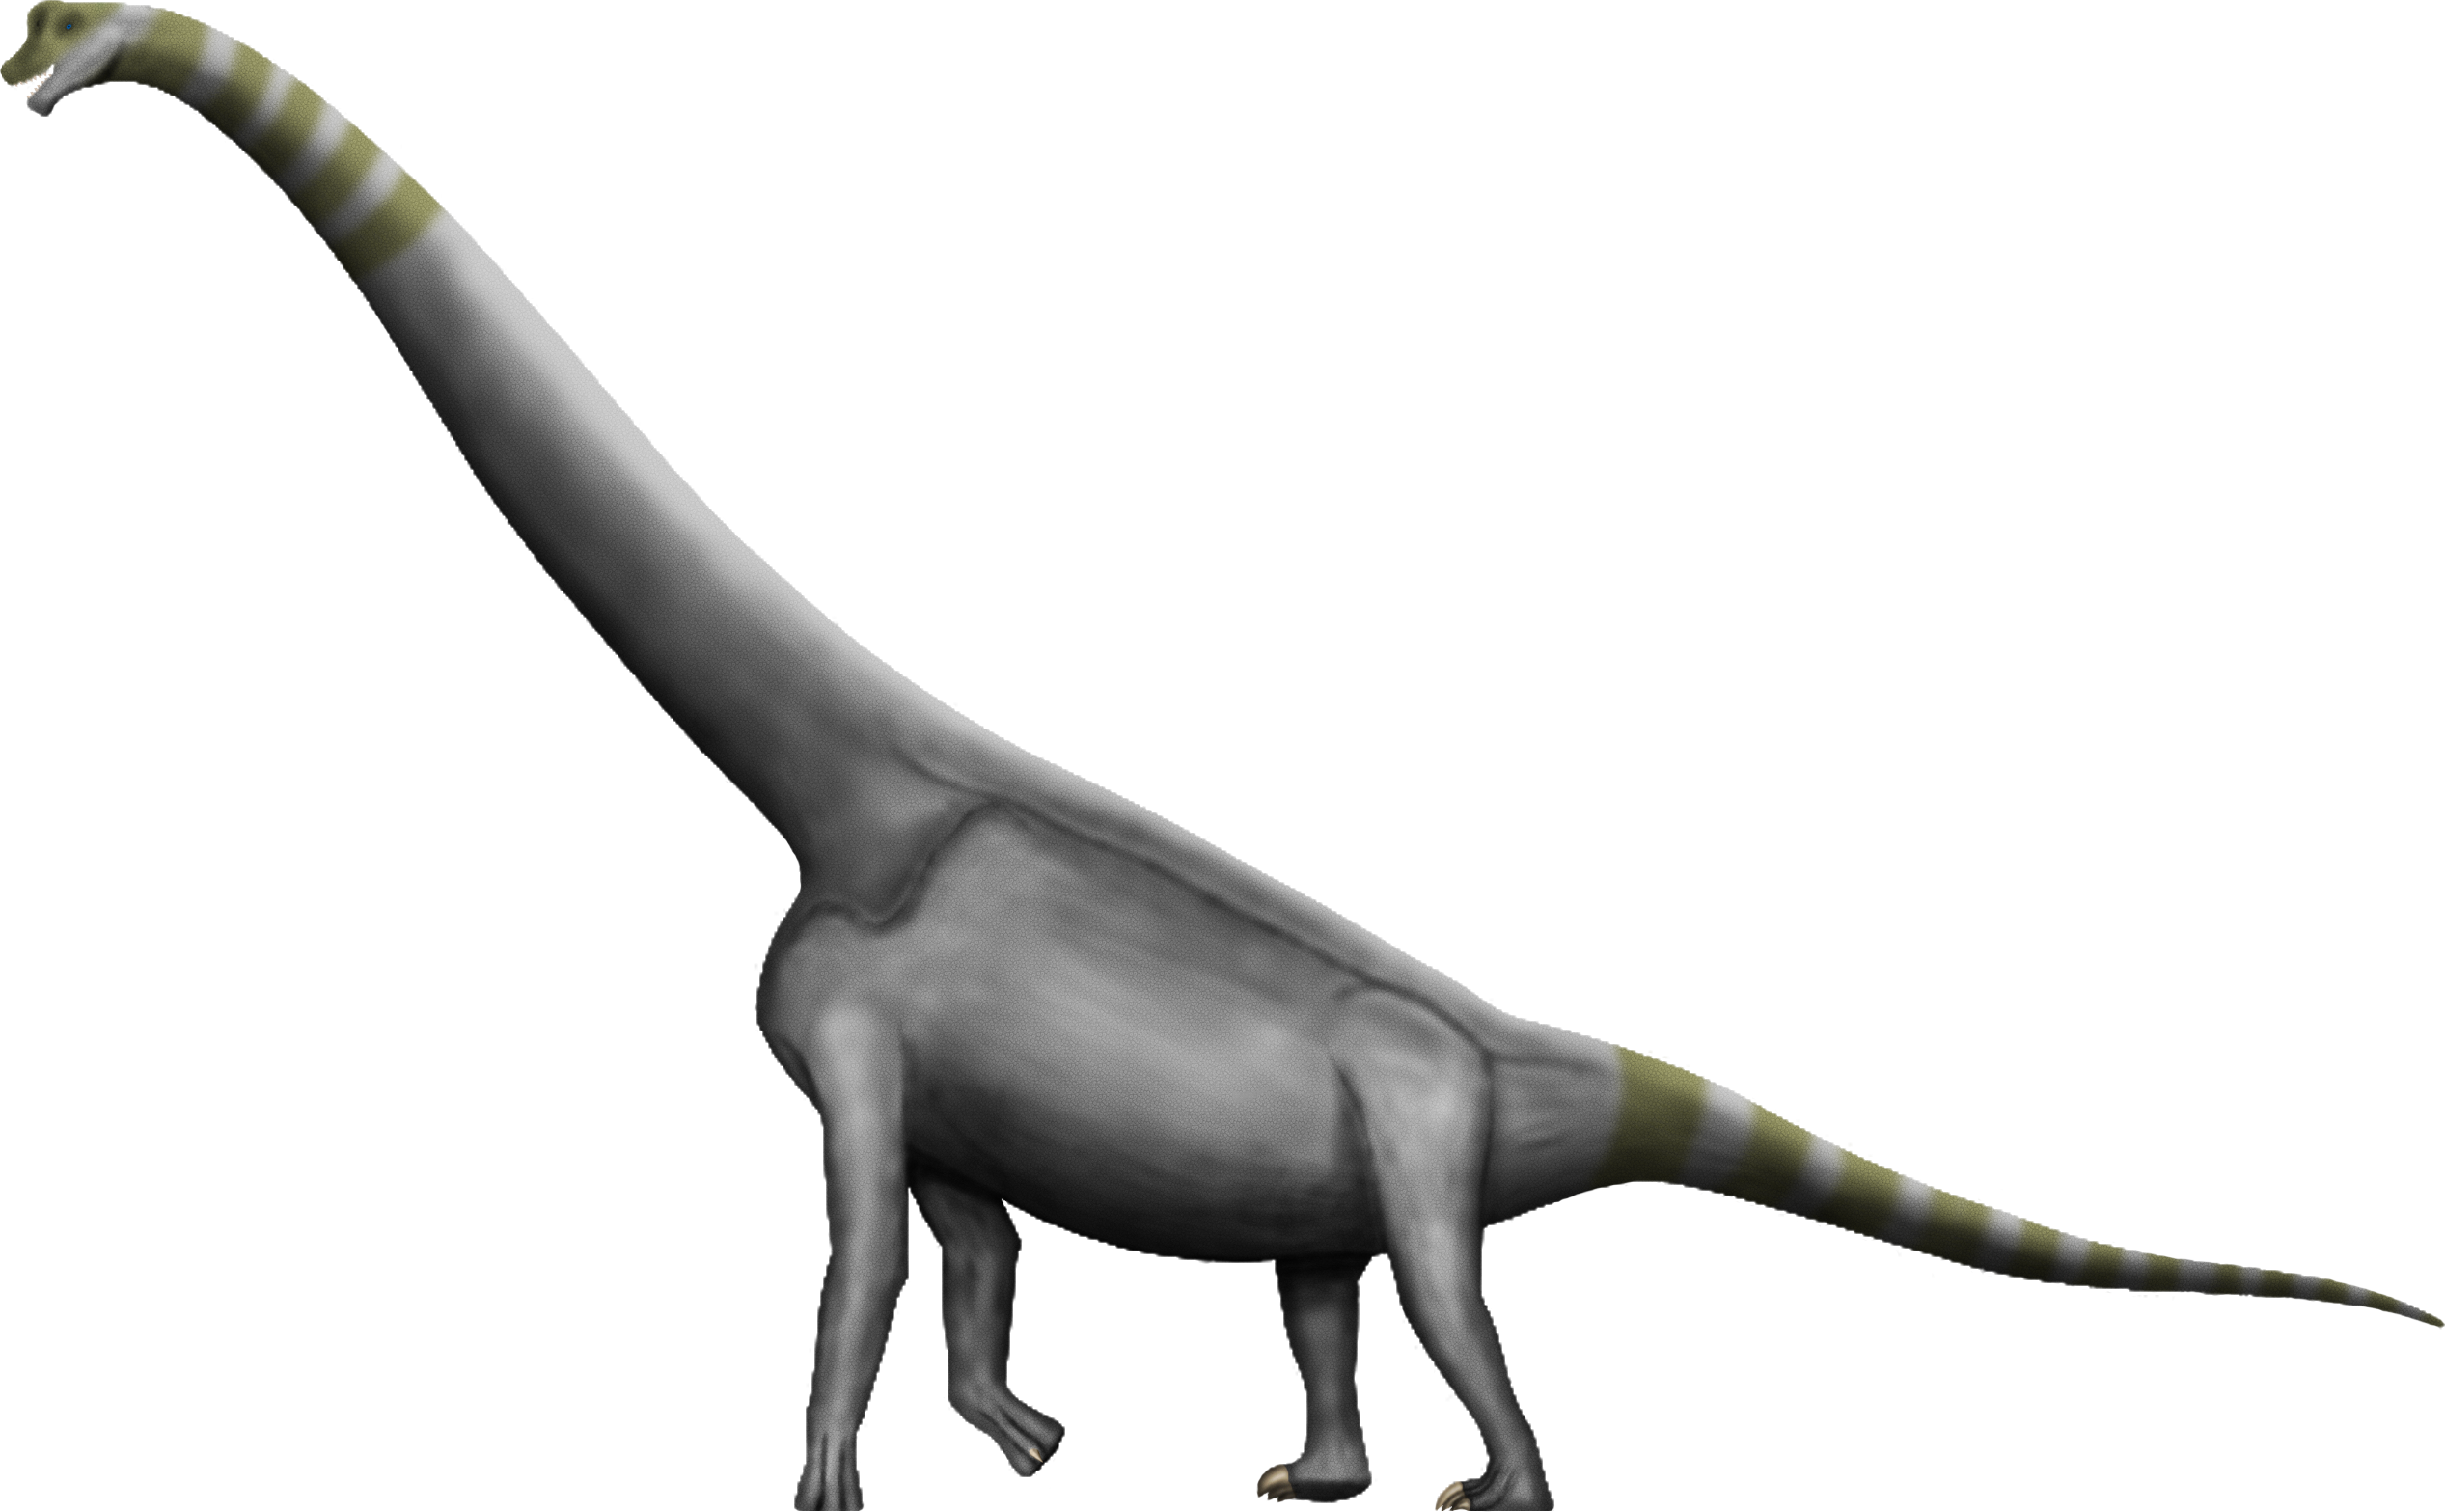 Brachiosaurus Free Download Image PNG Image